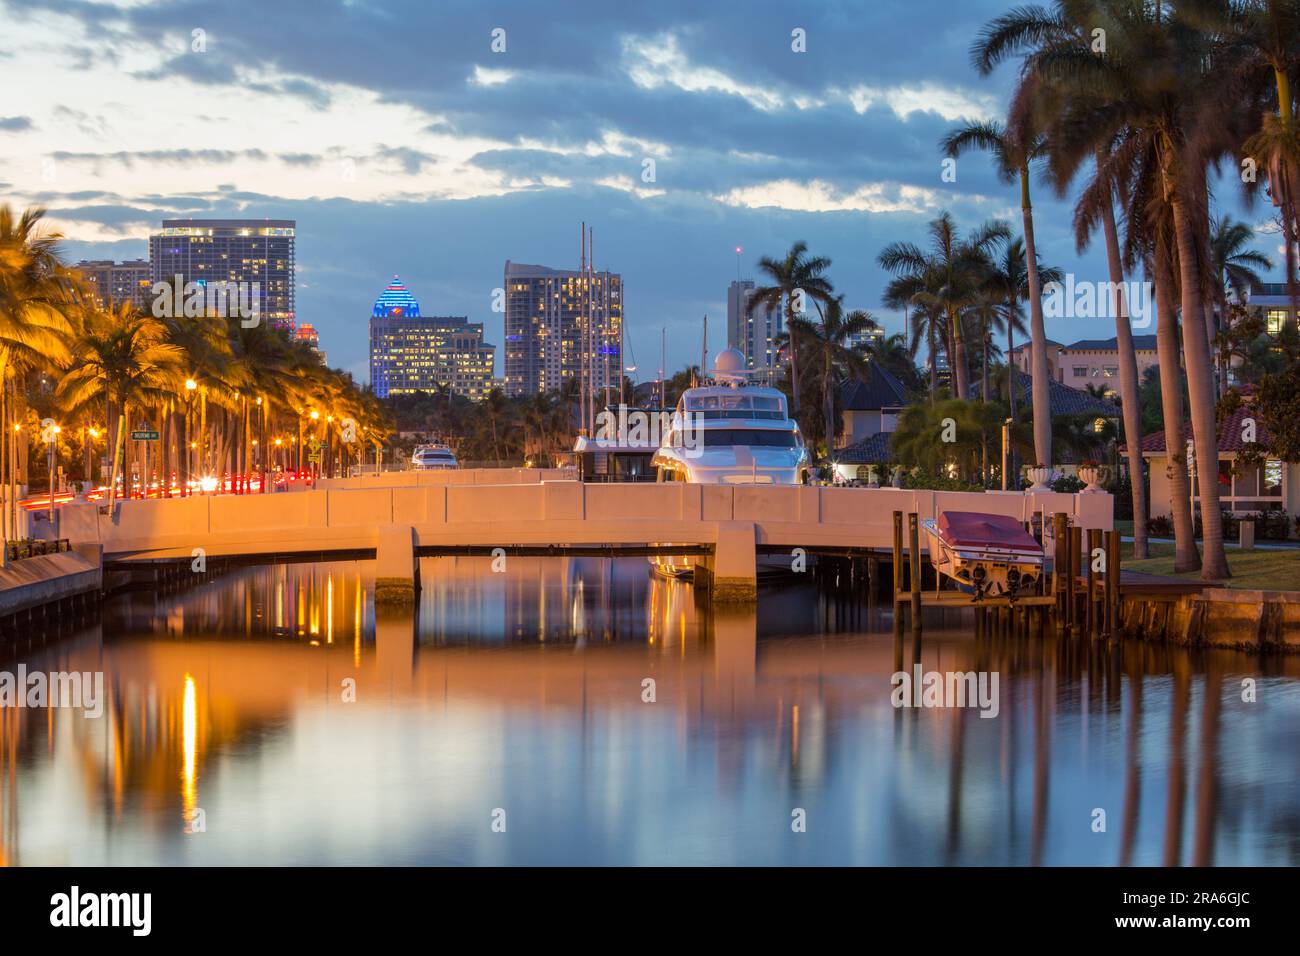 Fort Lauderdale, Florida, USA. Genießen Sie die ruhige Wasserstraße im Viertel Nurmi Isles, die beleuchteten Wolkenkratzer der Innenstadt im Hintergrund. Stockfoto